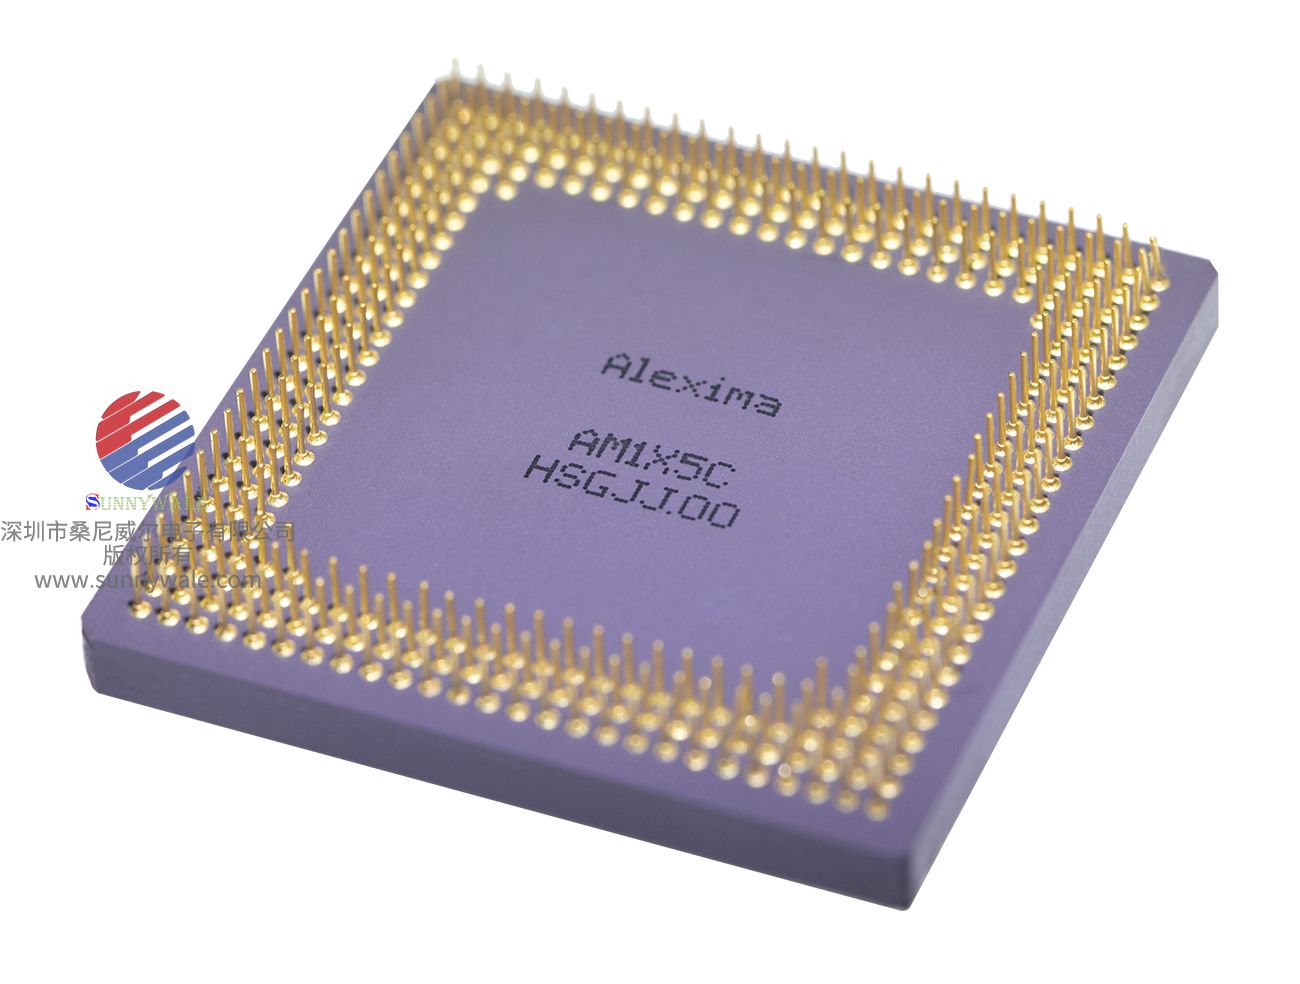  鲁西玛 AM1X5,史上最快的SENSOR,最高帧率的CMOS图像传感器，低像素超高帧率 cmos sensor，LUXIMA,ALEXIMA，低像素高帧率CMOS